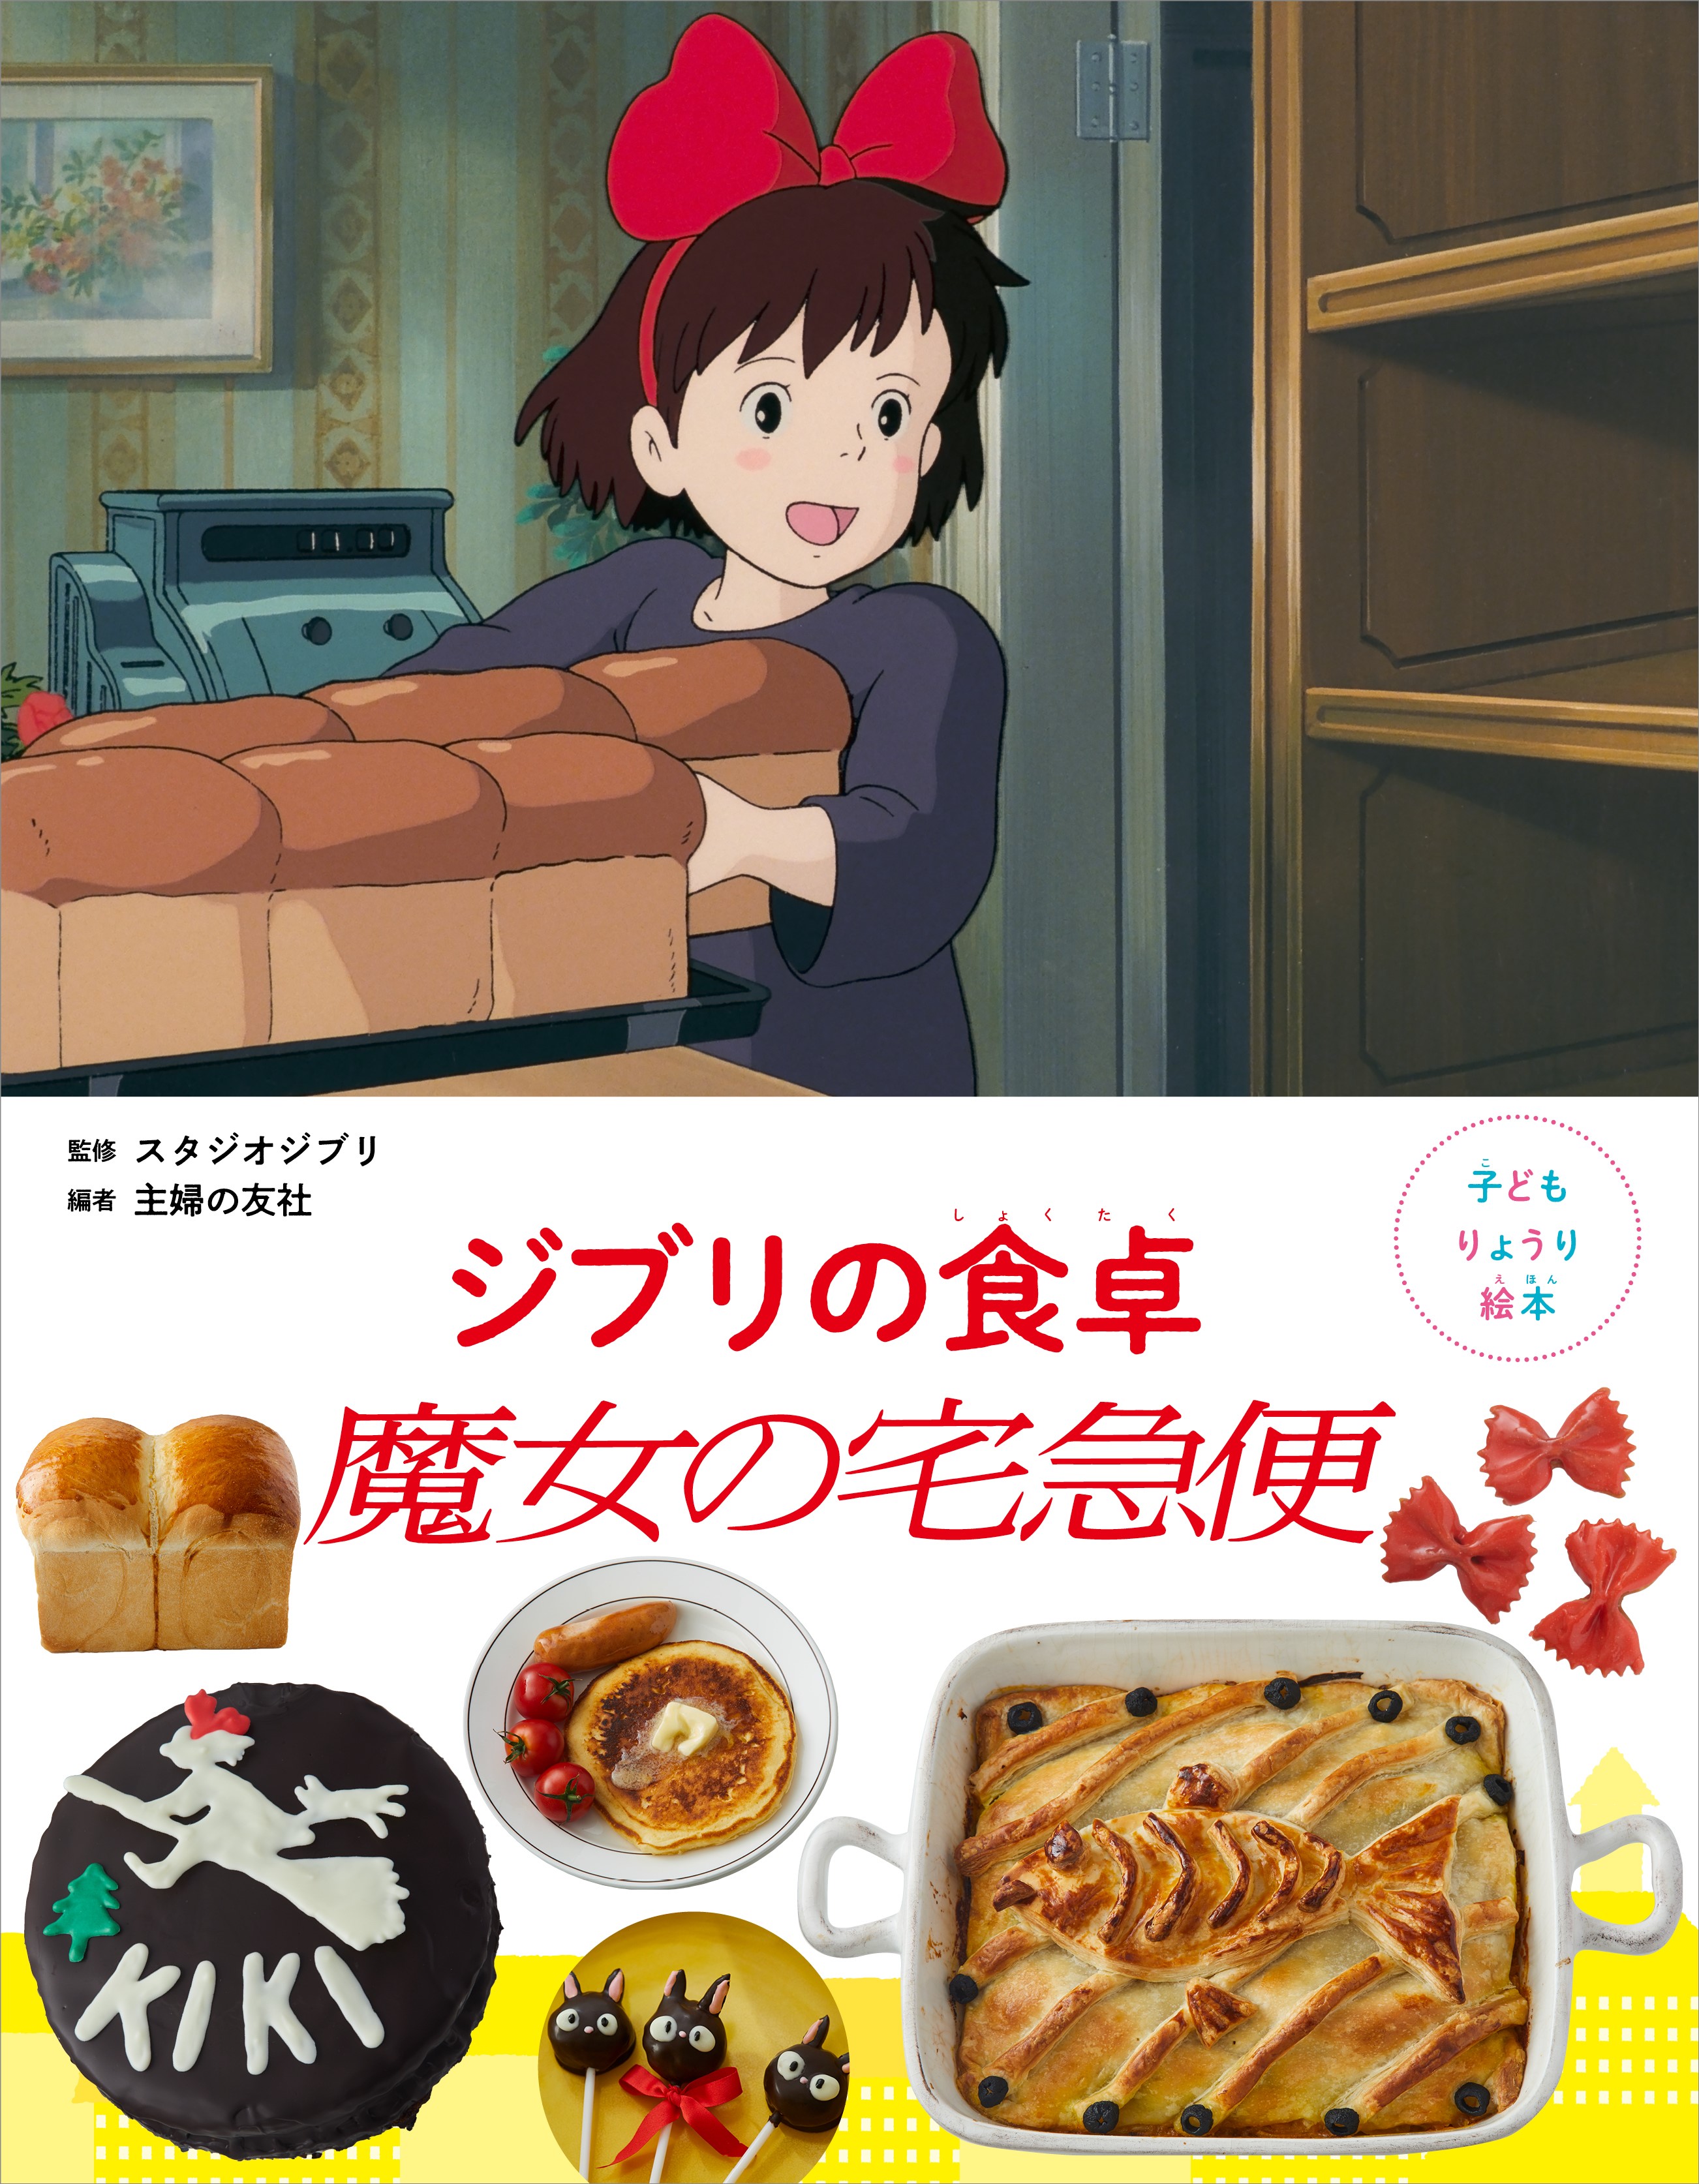 Cook Anime: A Cookbook